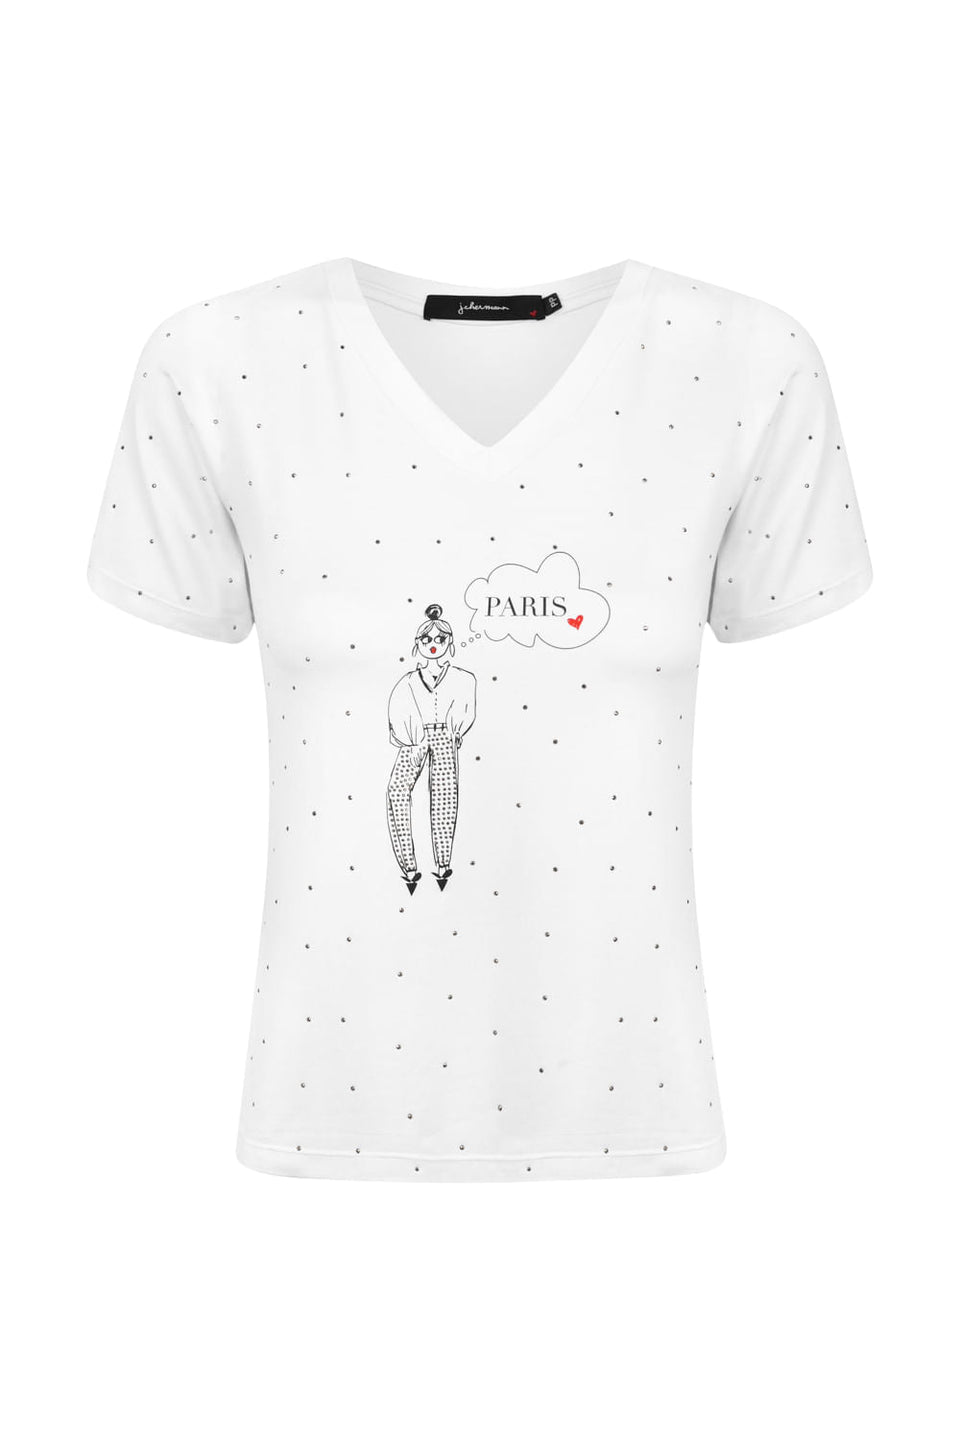 Camiseta Menina Paris Branco